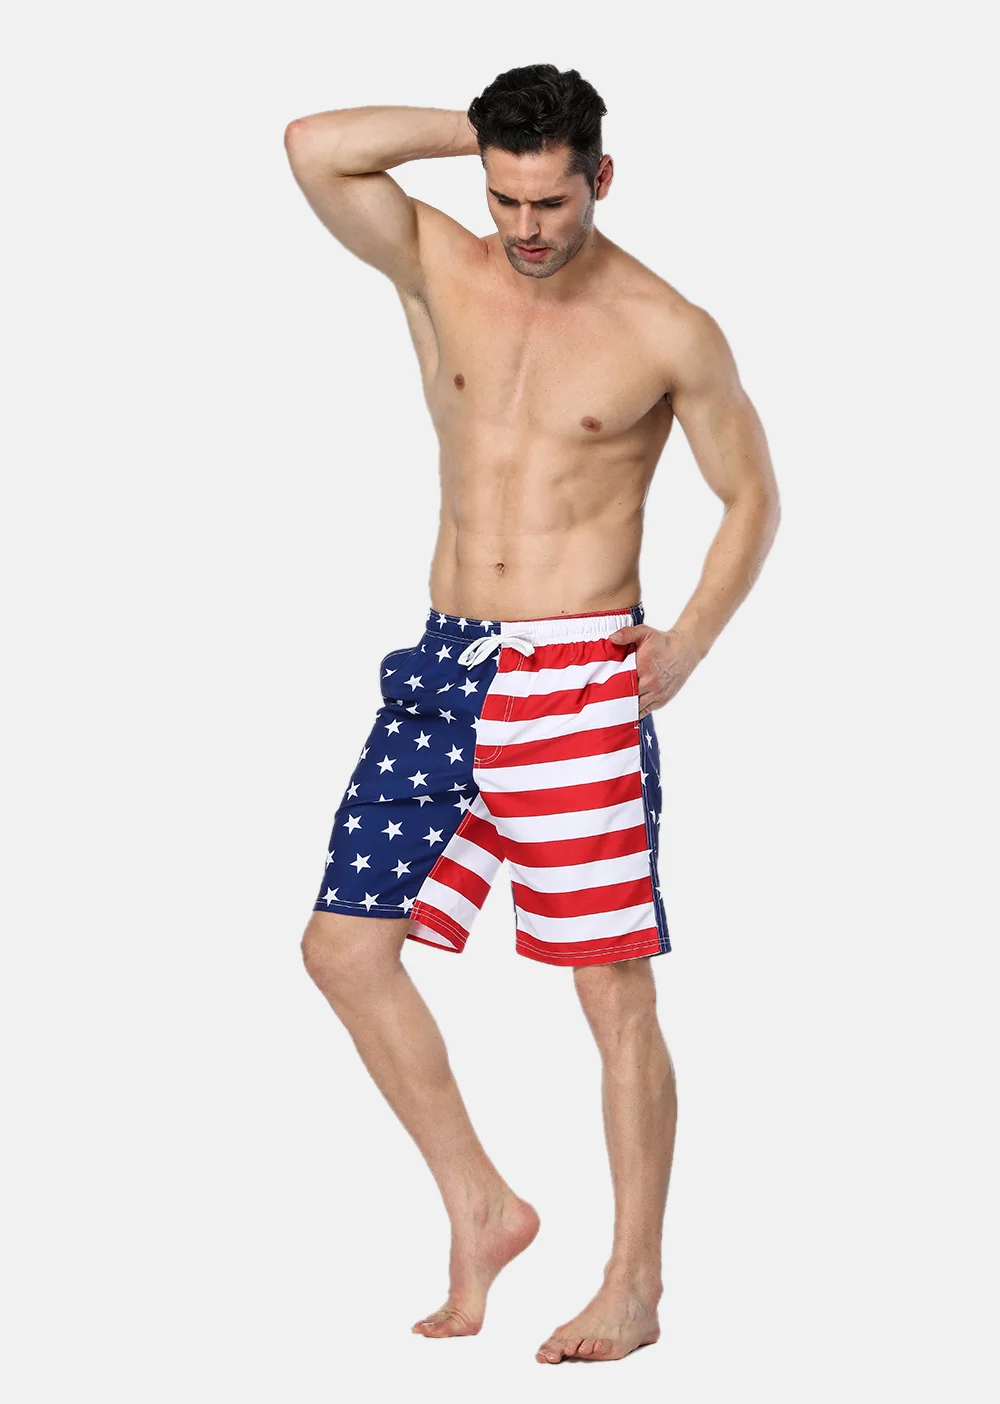 Anfilia мужские шорты для плавания с американским флагом, пляжные шорты, плавки, мужские плавки, Шорты для плавания с американским флагом